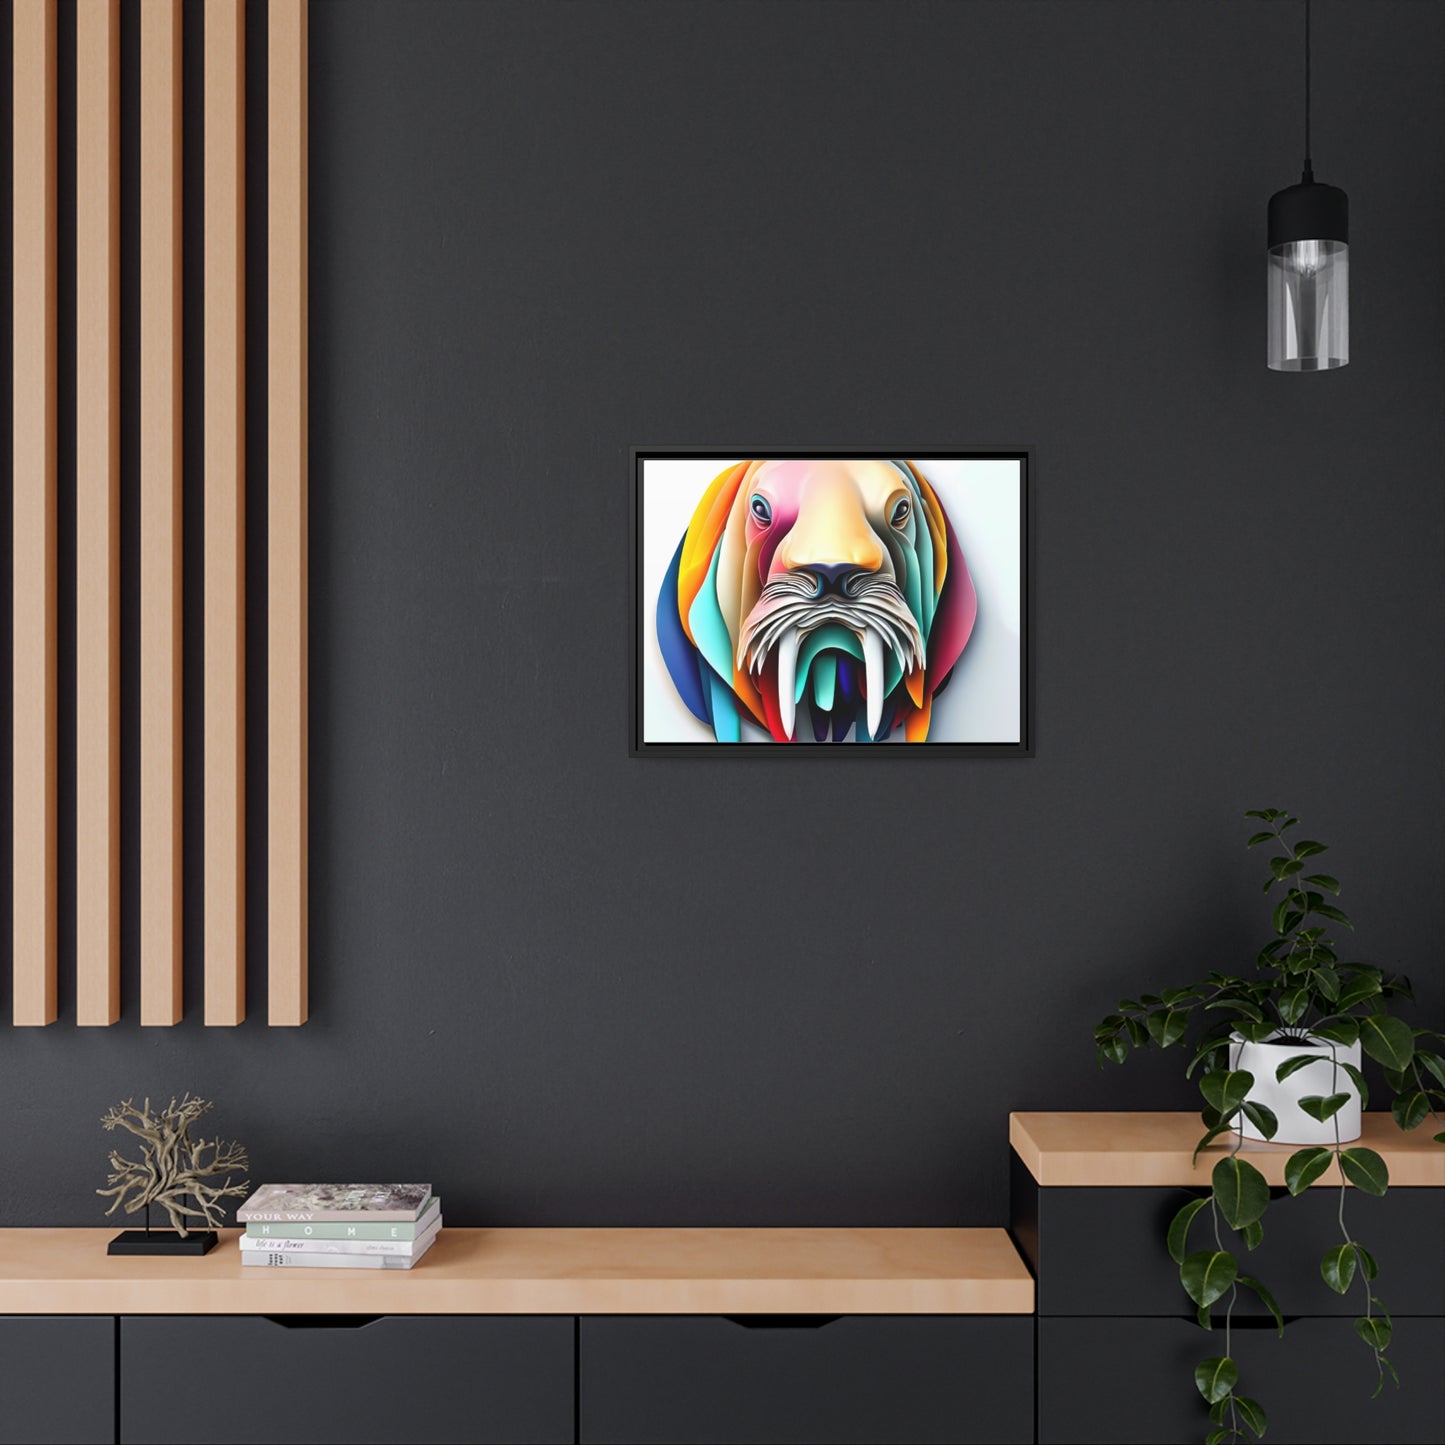 3D Modern Home Decor - Matte Canvas Wall Art, Black Frame - Walrus - Gift Item Special